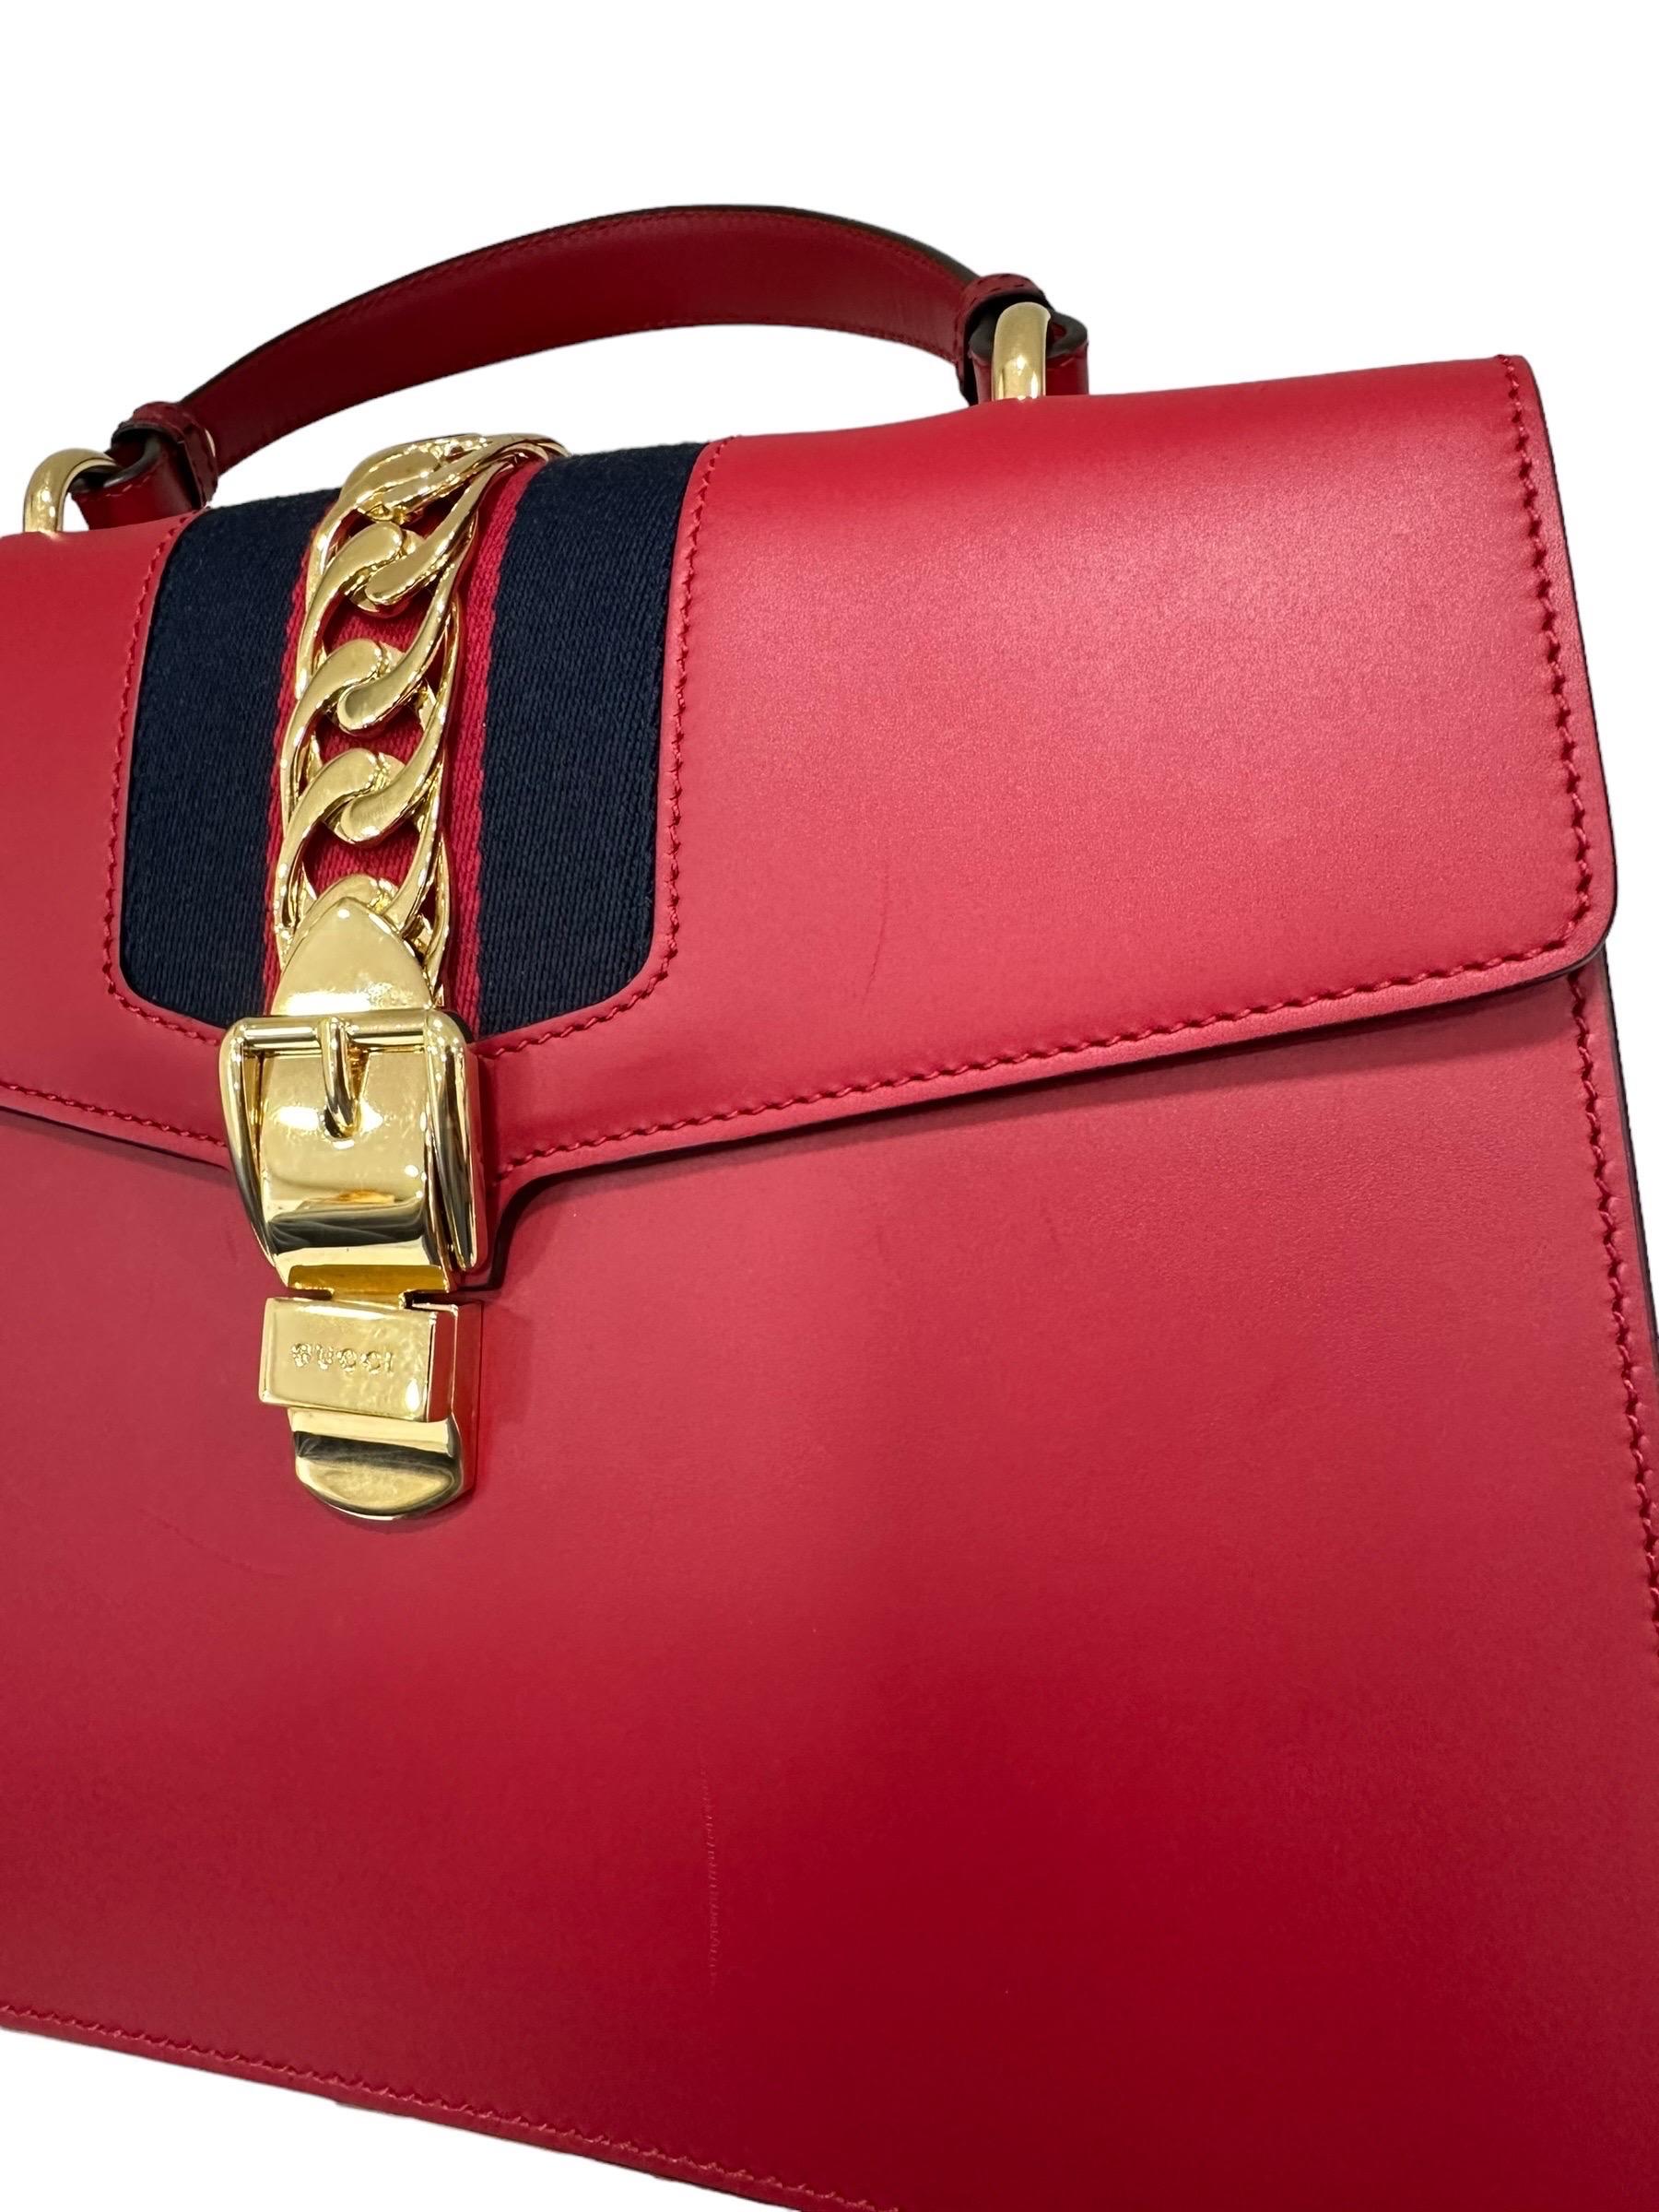 Gucci Sylvie Media Borsa a Tracolla pelle Rossa  For Sale 10